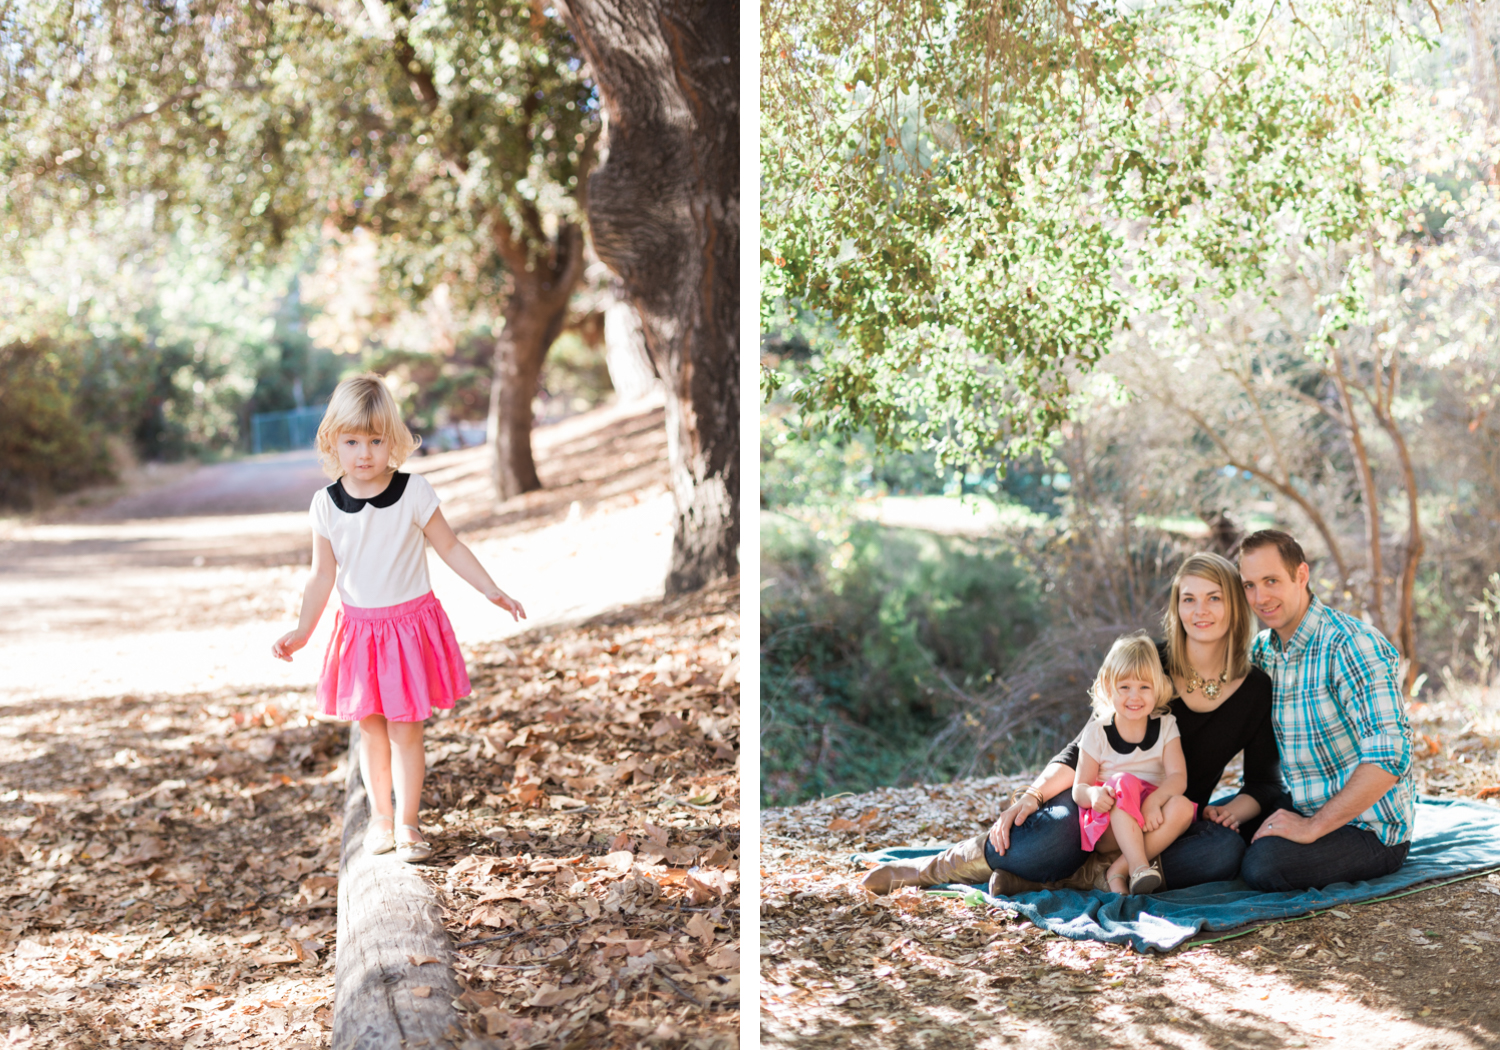 Santa Clara Central Park // Bay Area Family Photography // Olivia Richards Photography // www.oliviarichards.net